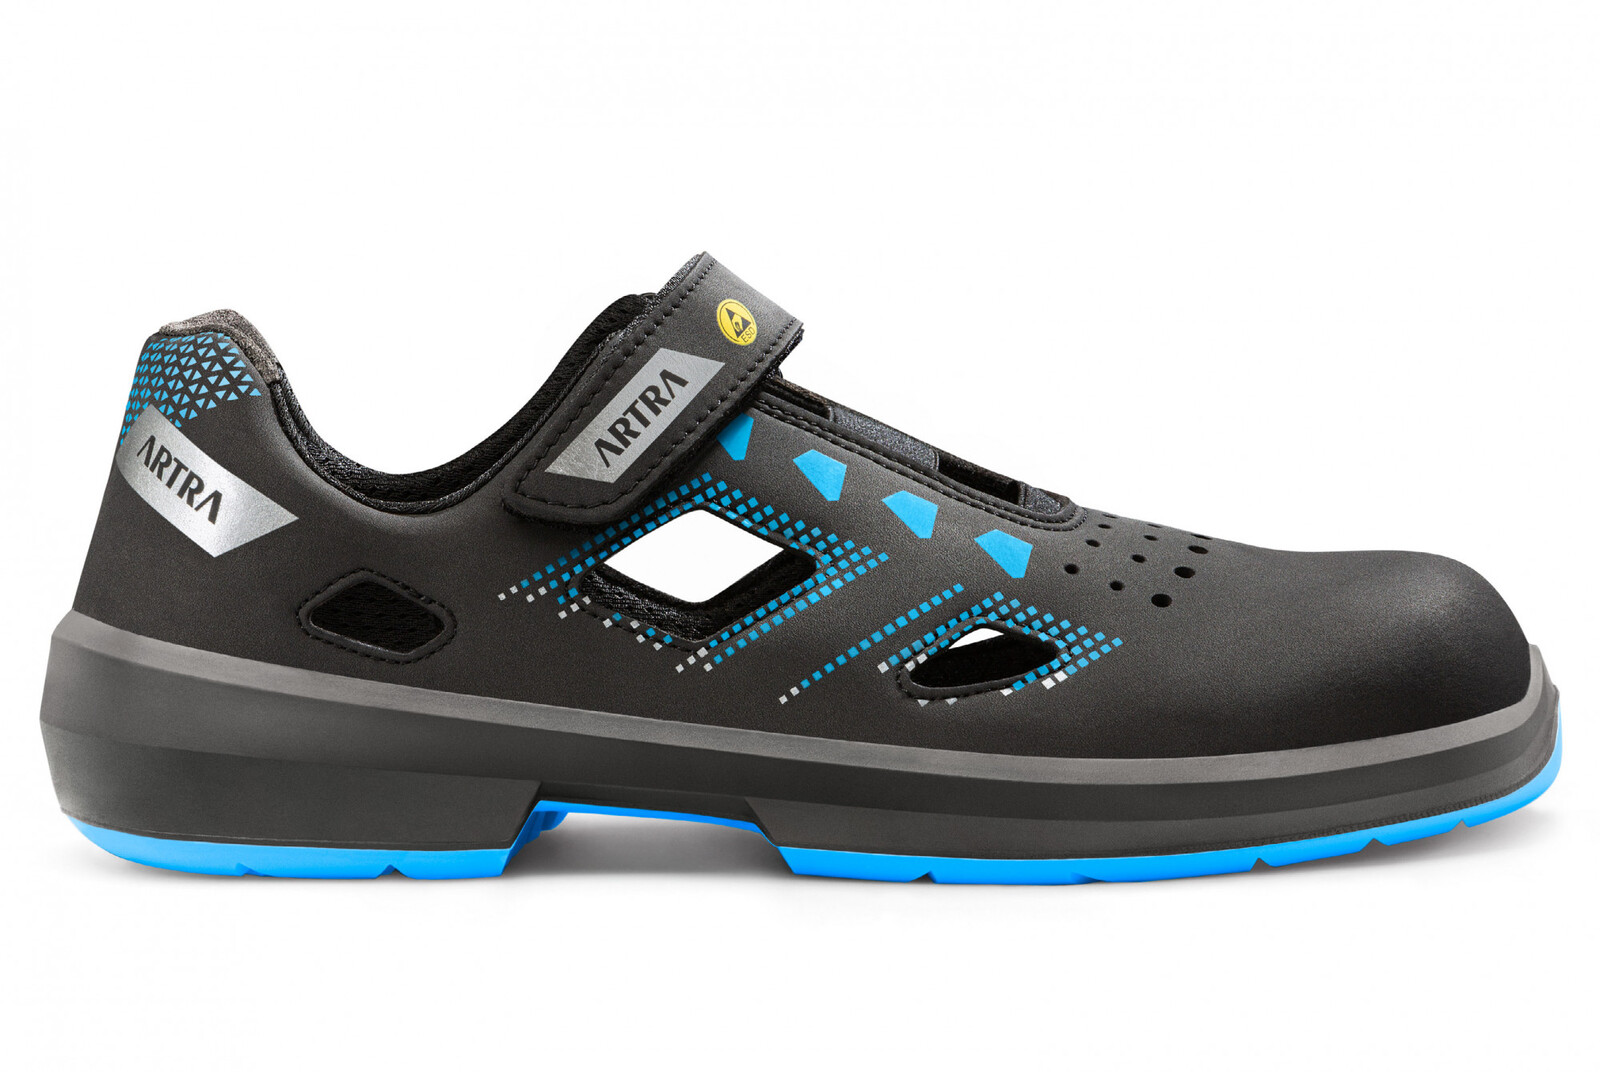 Bezpečnostné sandále Artra Arzo 805 619090 S1 SRC ESD MF - veľkosť: 43, farba: čierna/modrá